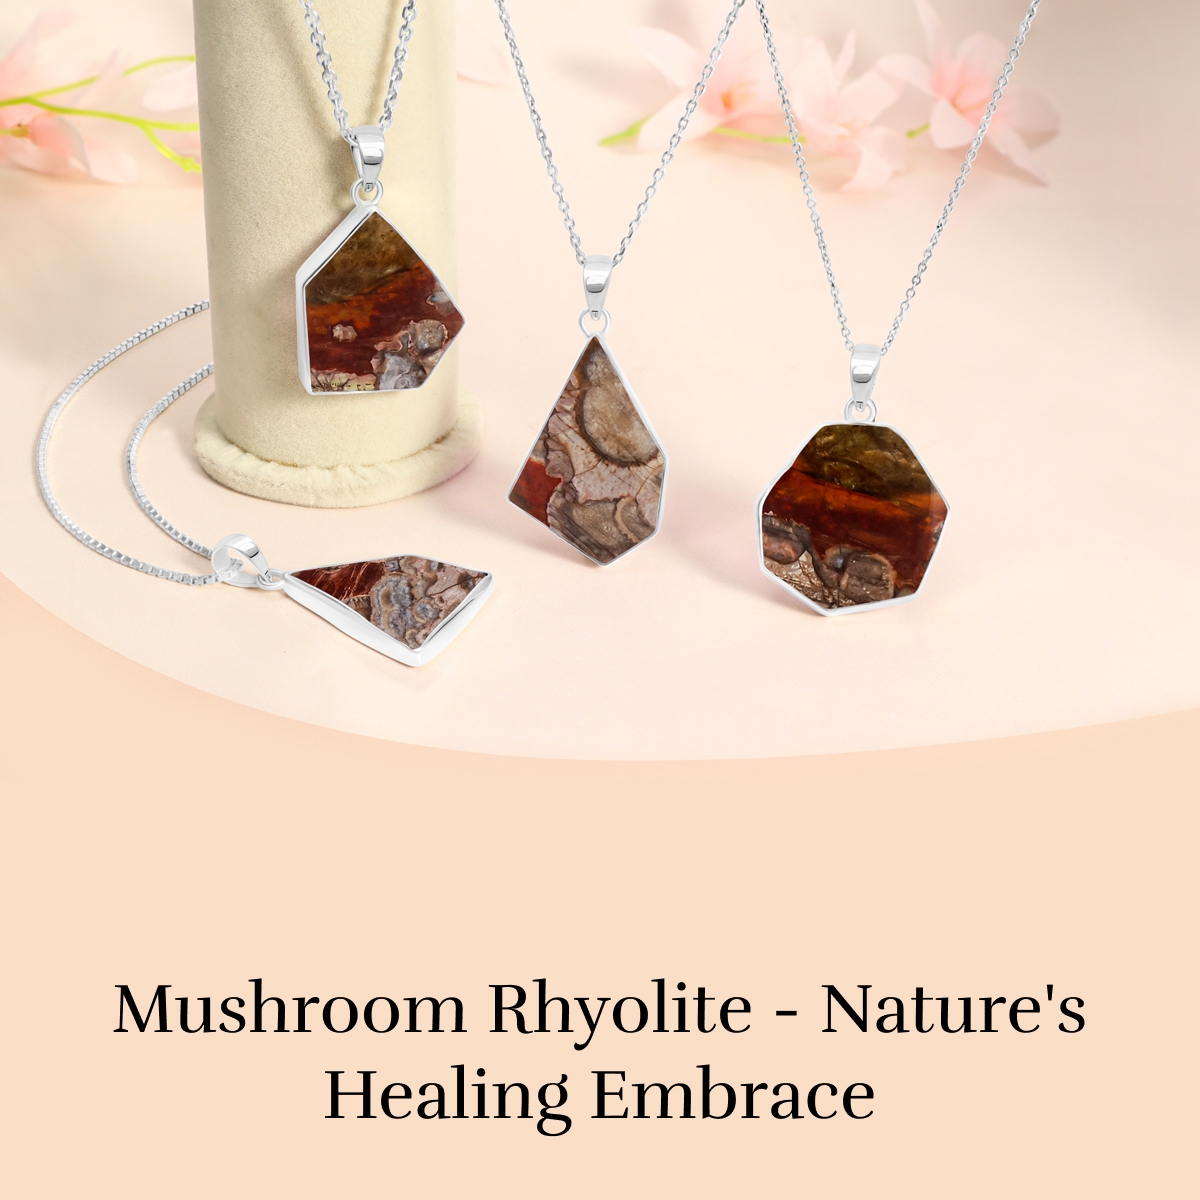 Mushroom Rhyolite: Physical Healing properties